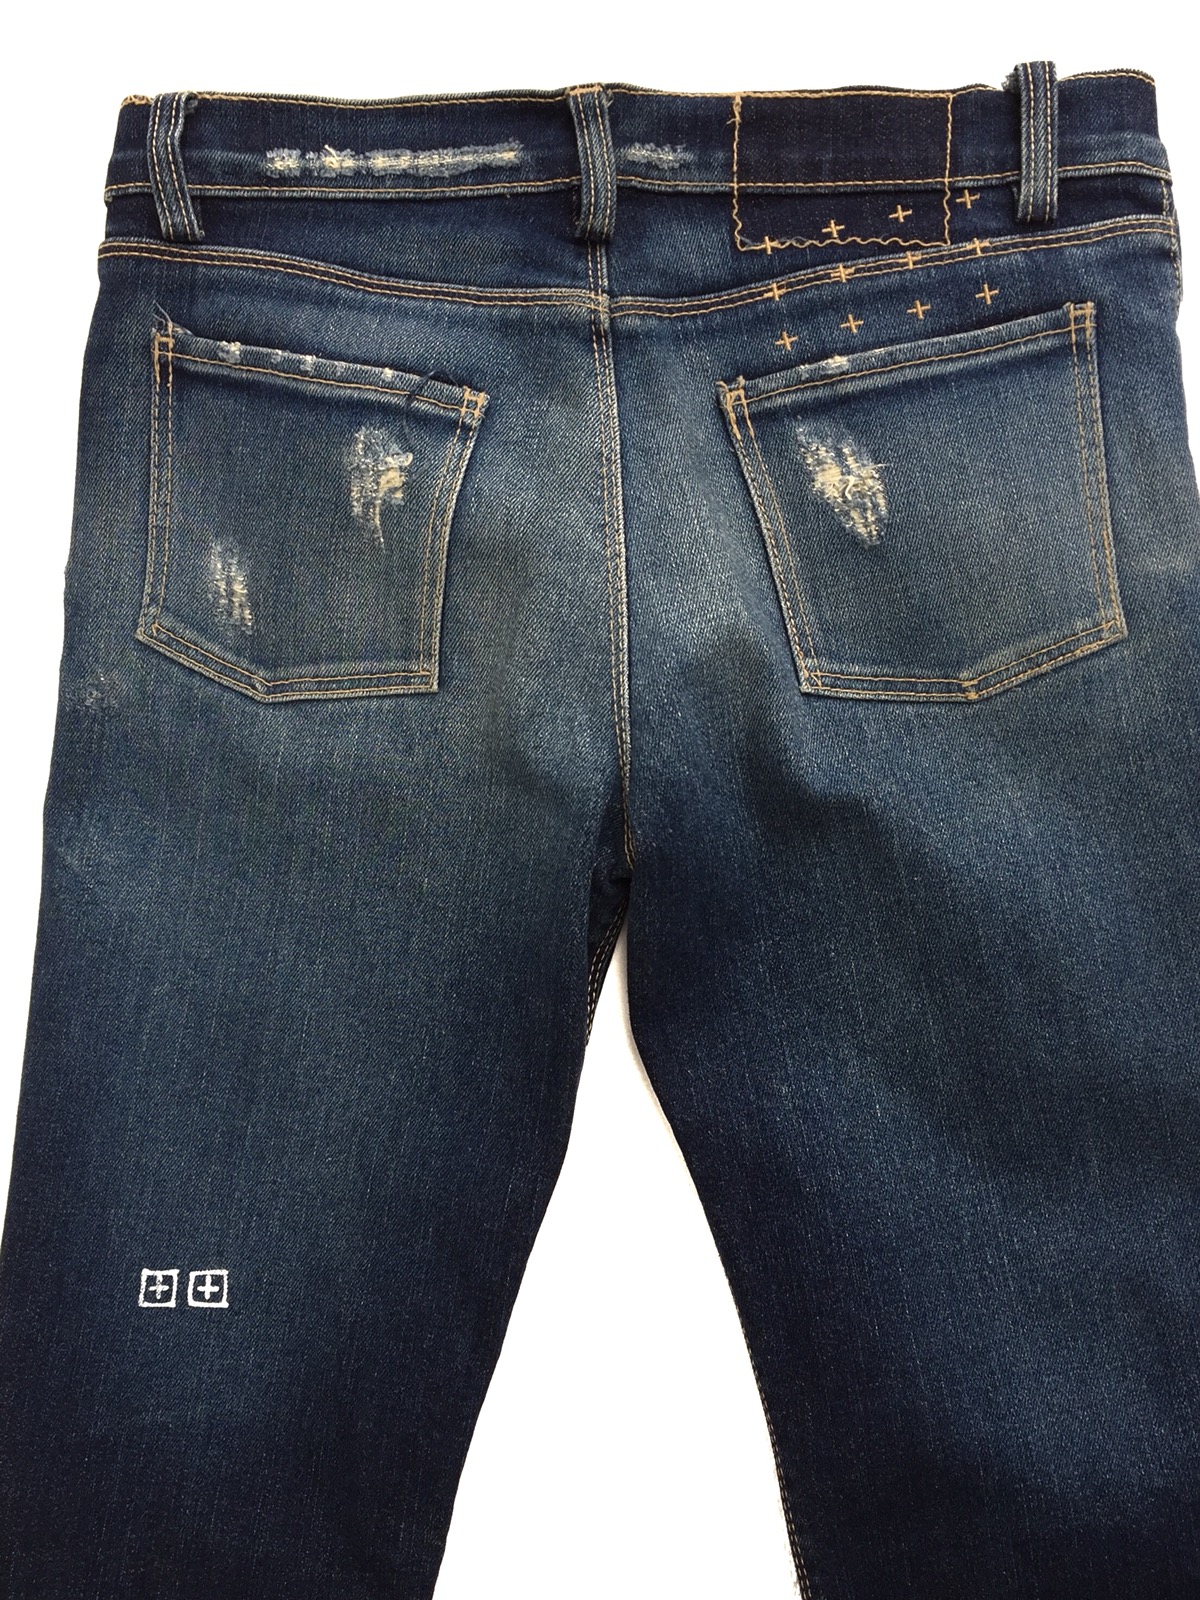 KSUBI Distressed Rip Van Winkle Jeans - 2